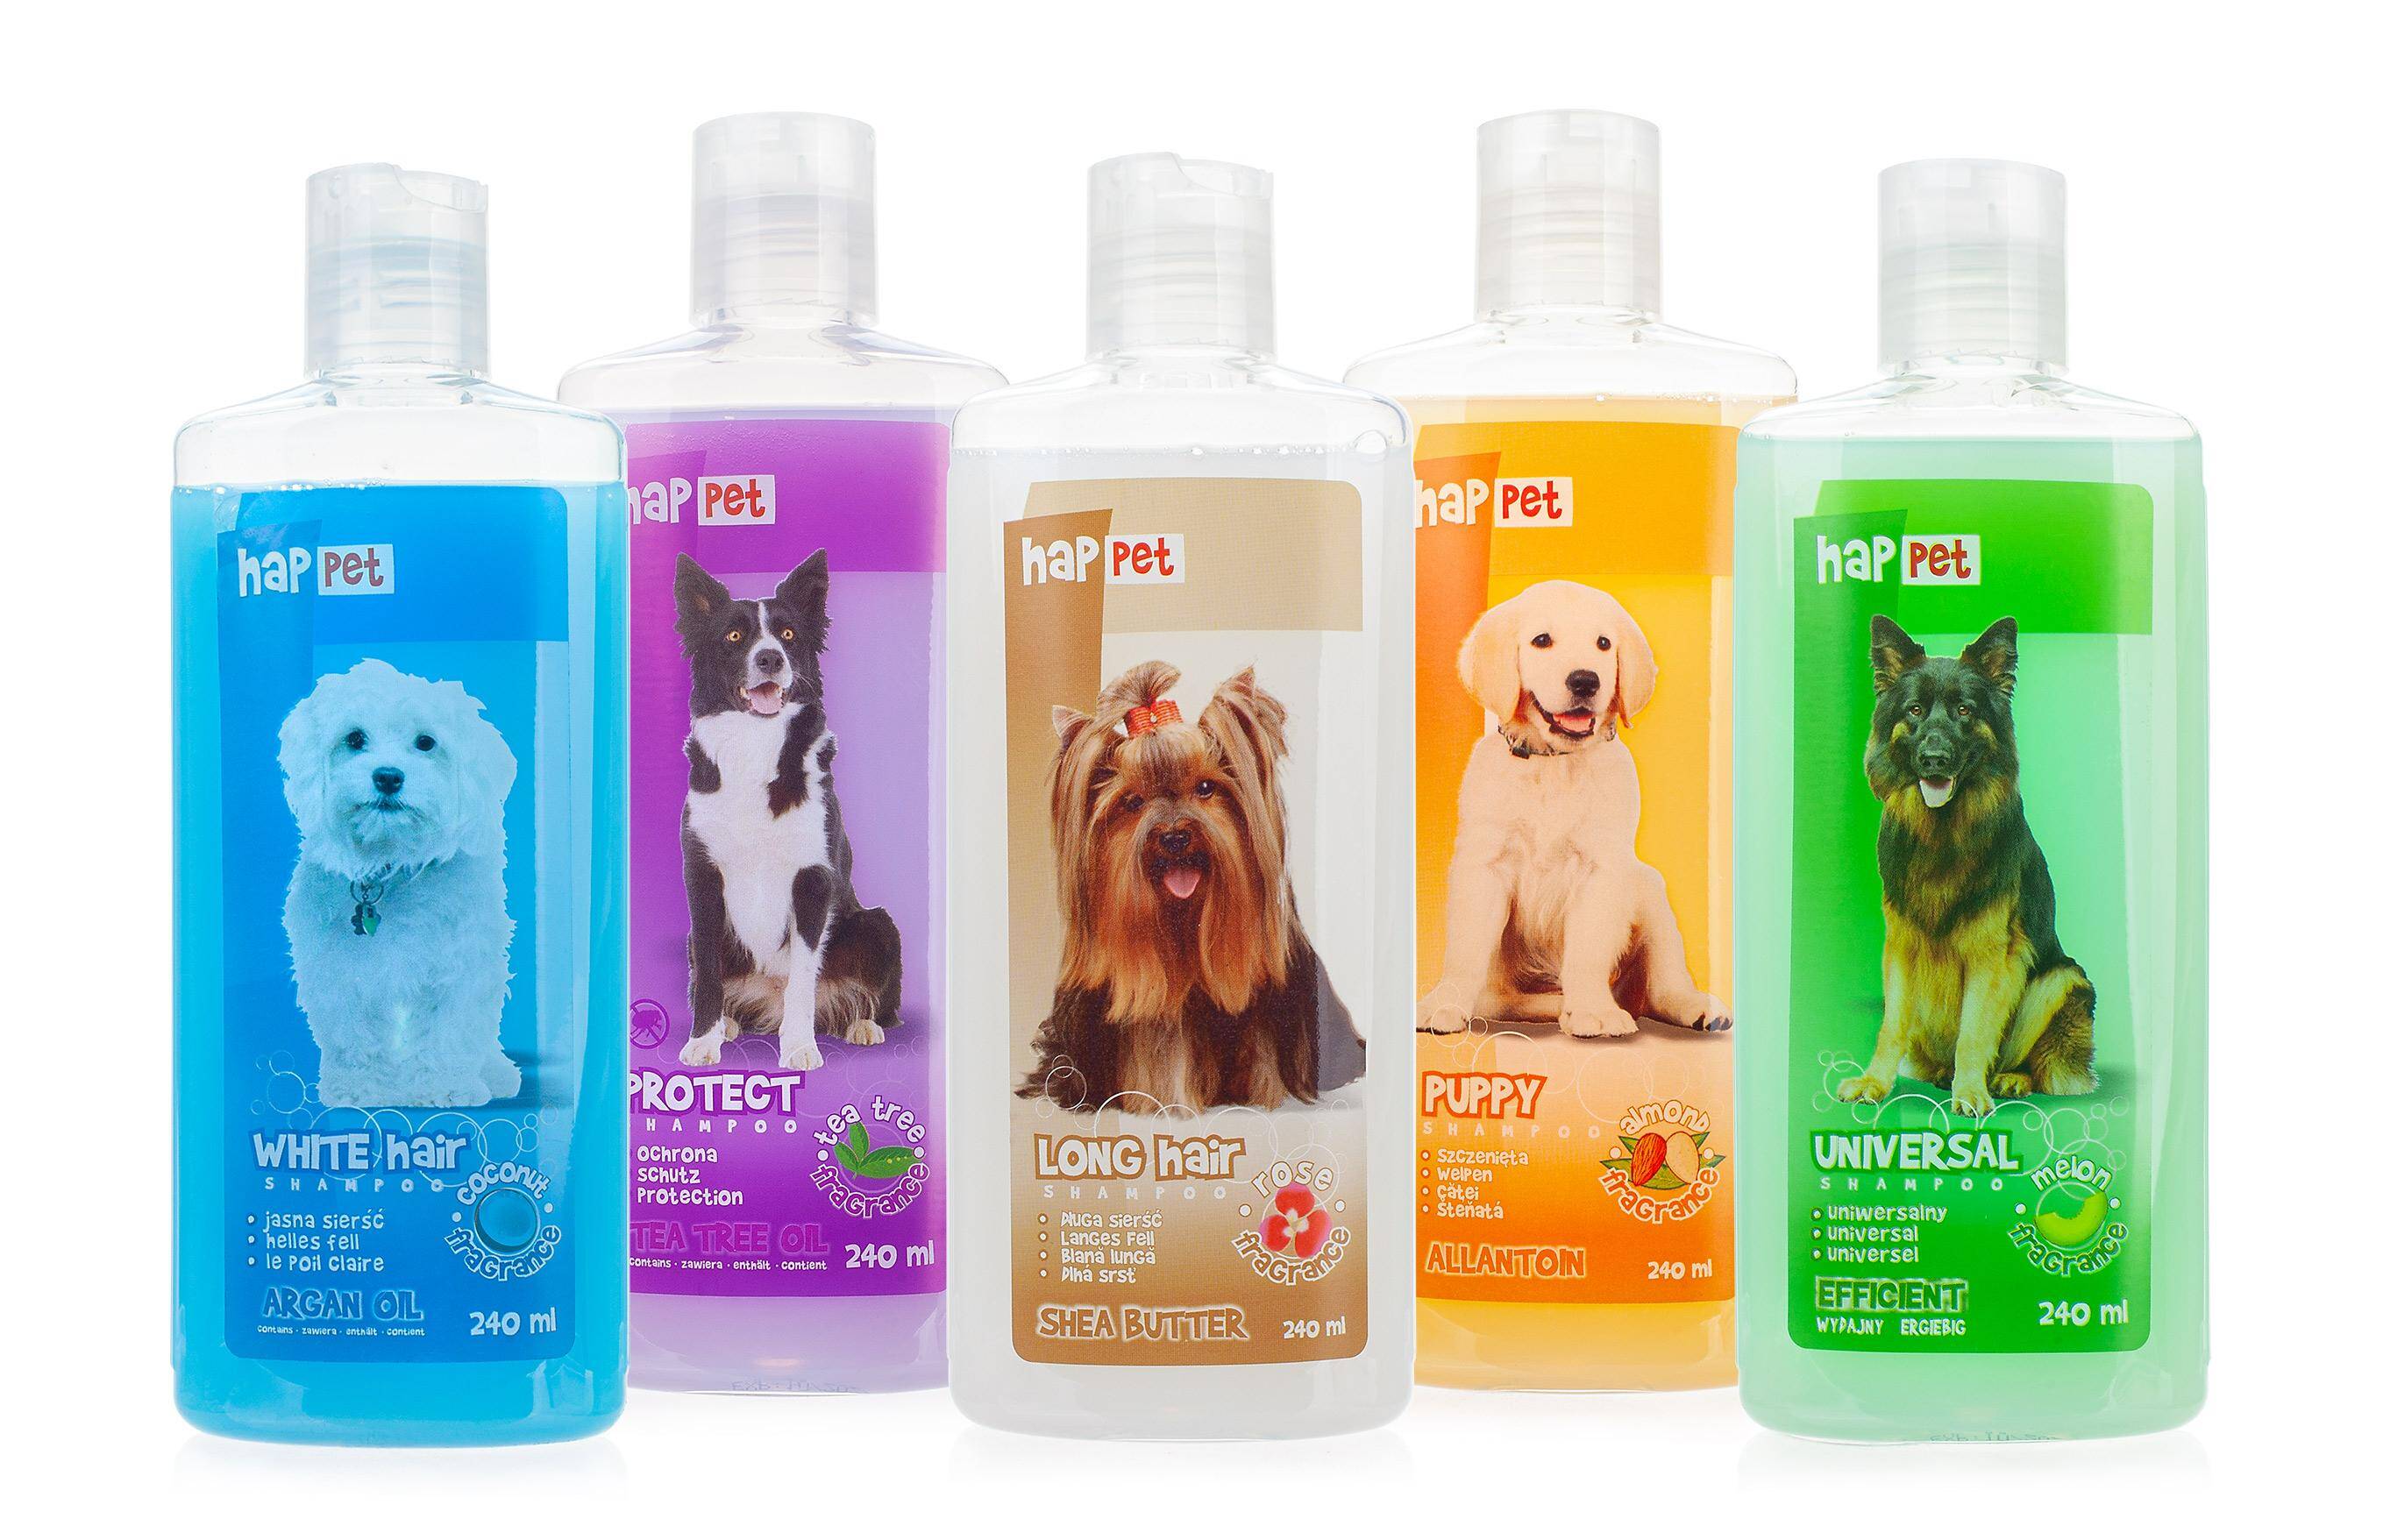 szampon dla hiszpańskich psów dowodnych